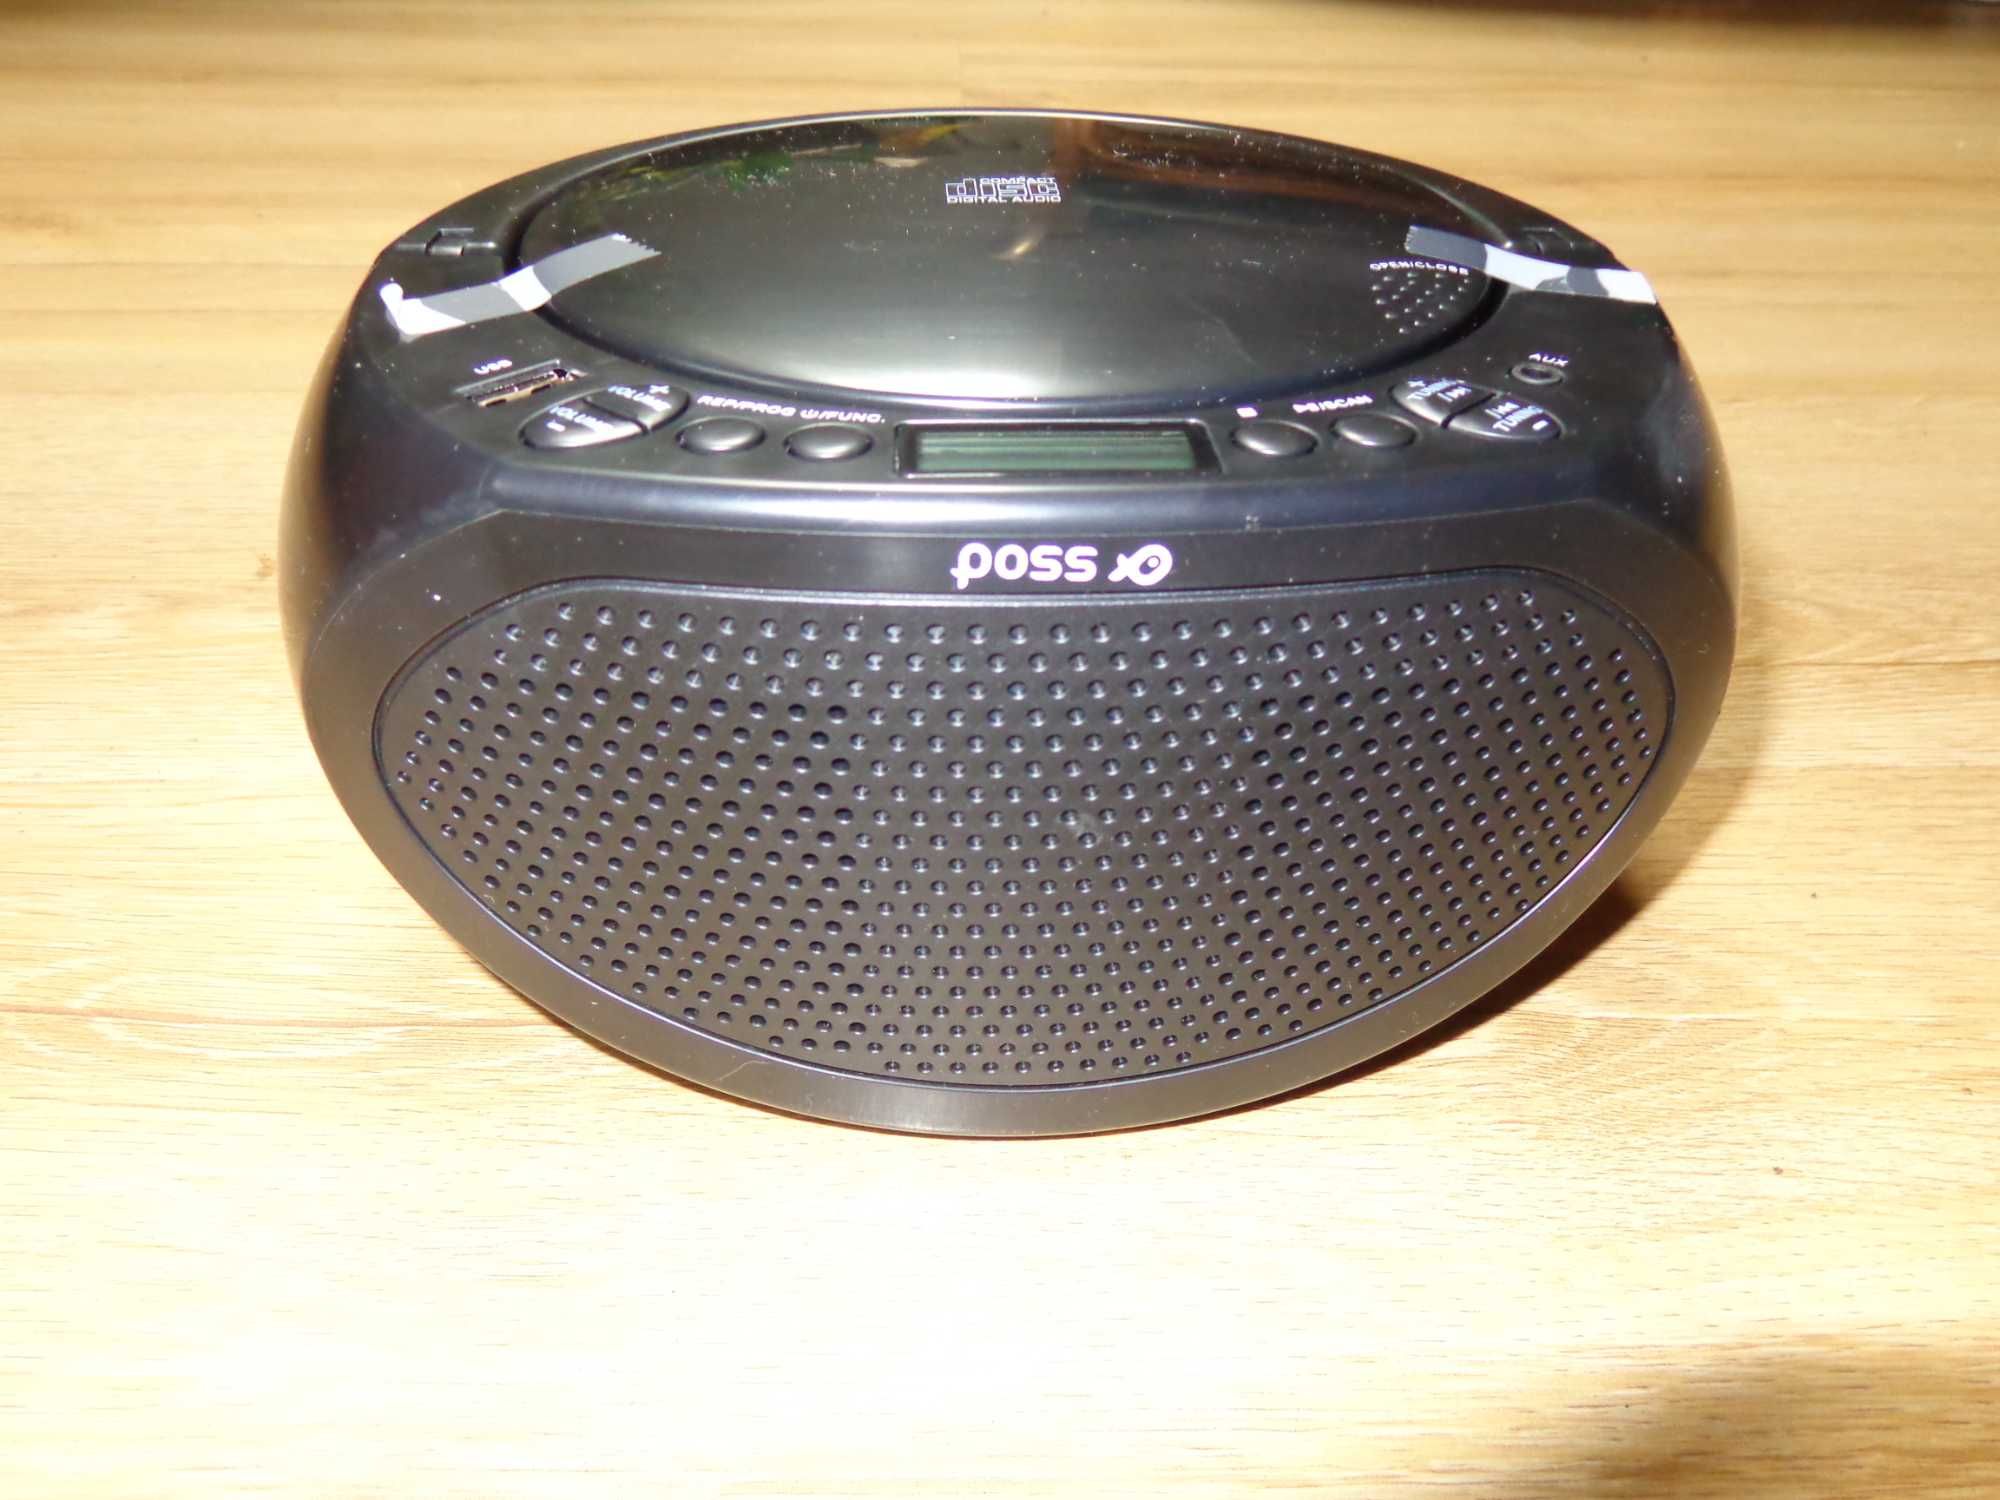 Radioodtwarzacz CD Boombox Poss BBX2020